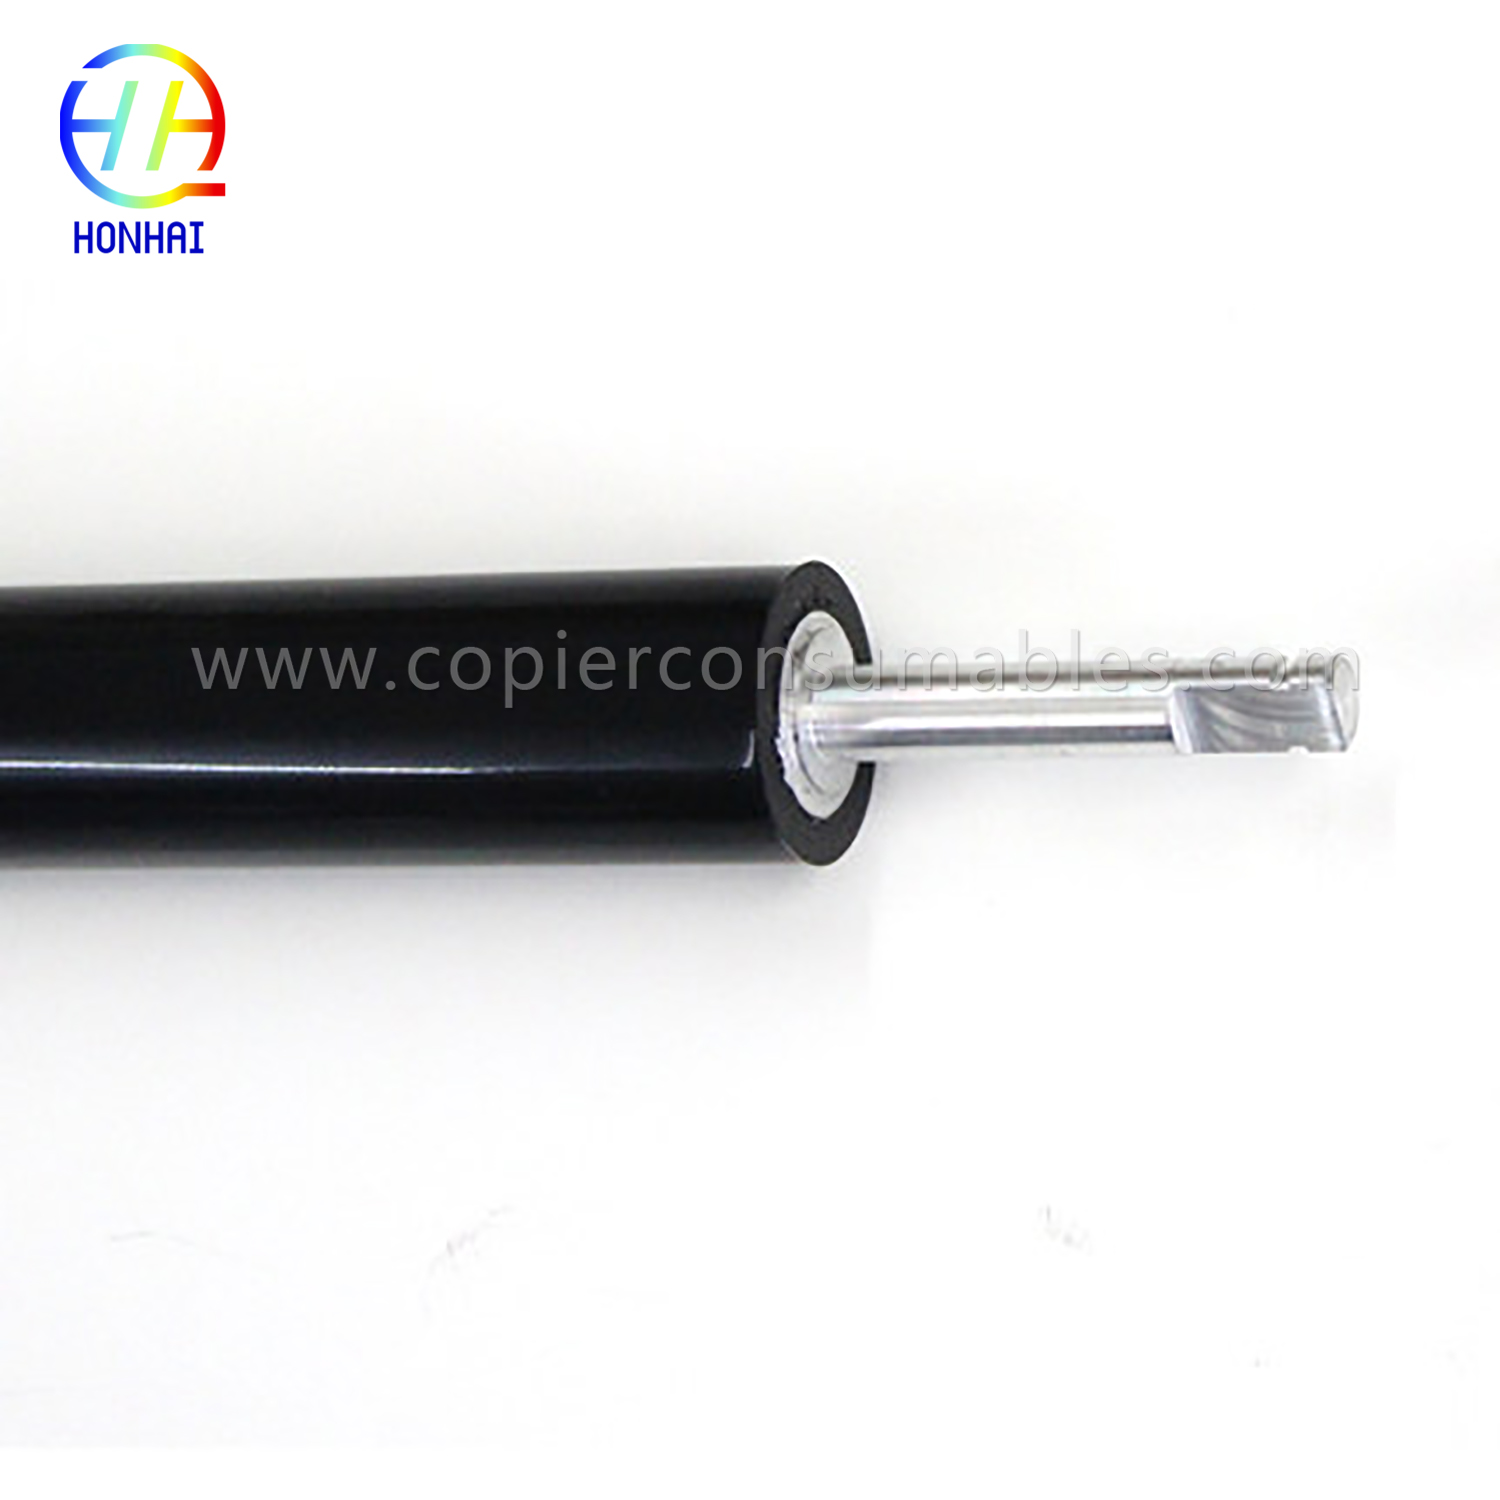 I-Lower Pressure Roller ye-HP Color LaserJet 4700 4730 CM4730 CP4005 (LPR-4700) (3) 拷贝